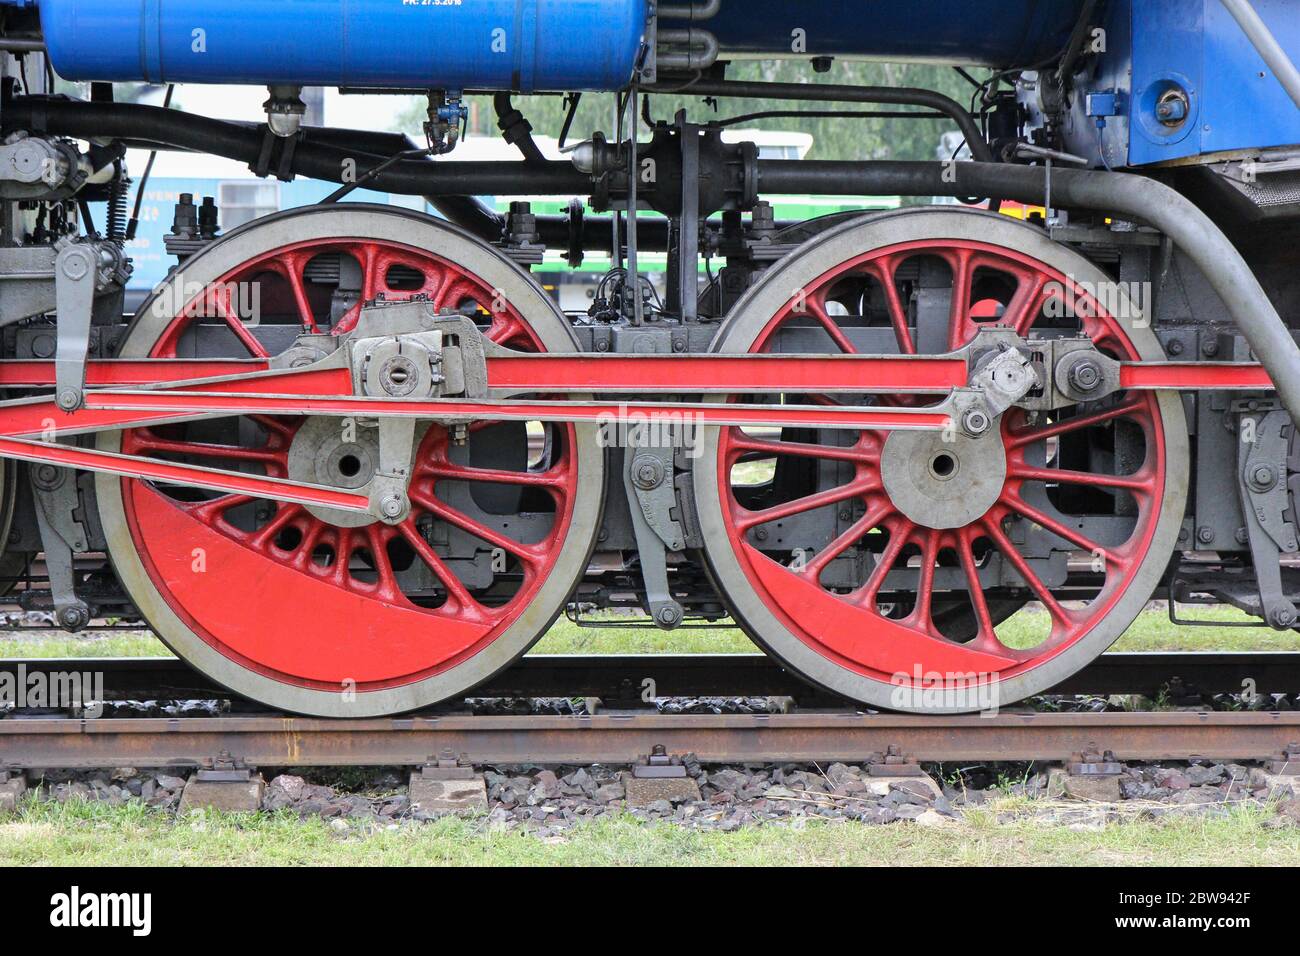 Die Radmaschine einer Lokomotive. Ausstellung alter Lokomotiven und Züge. Stockfoto